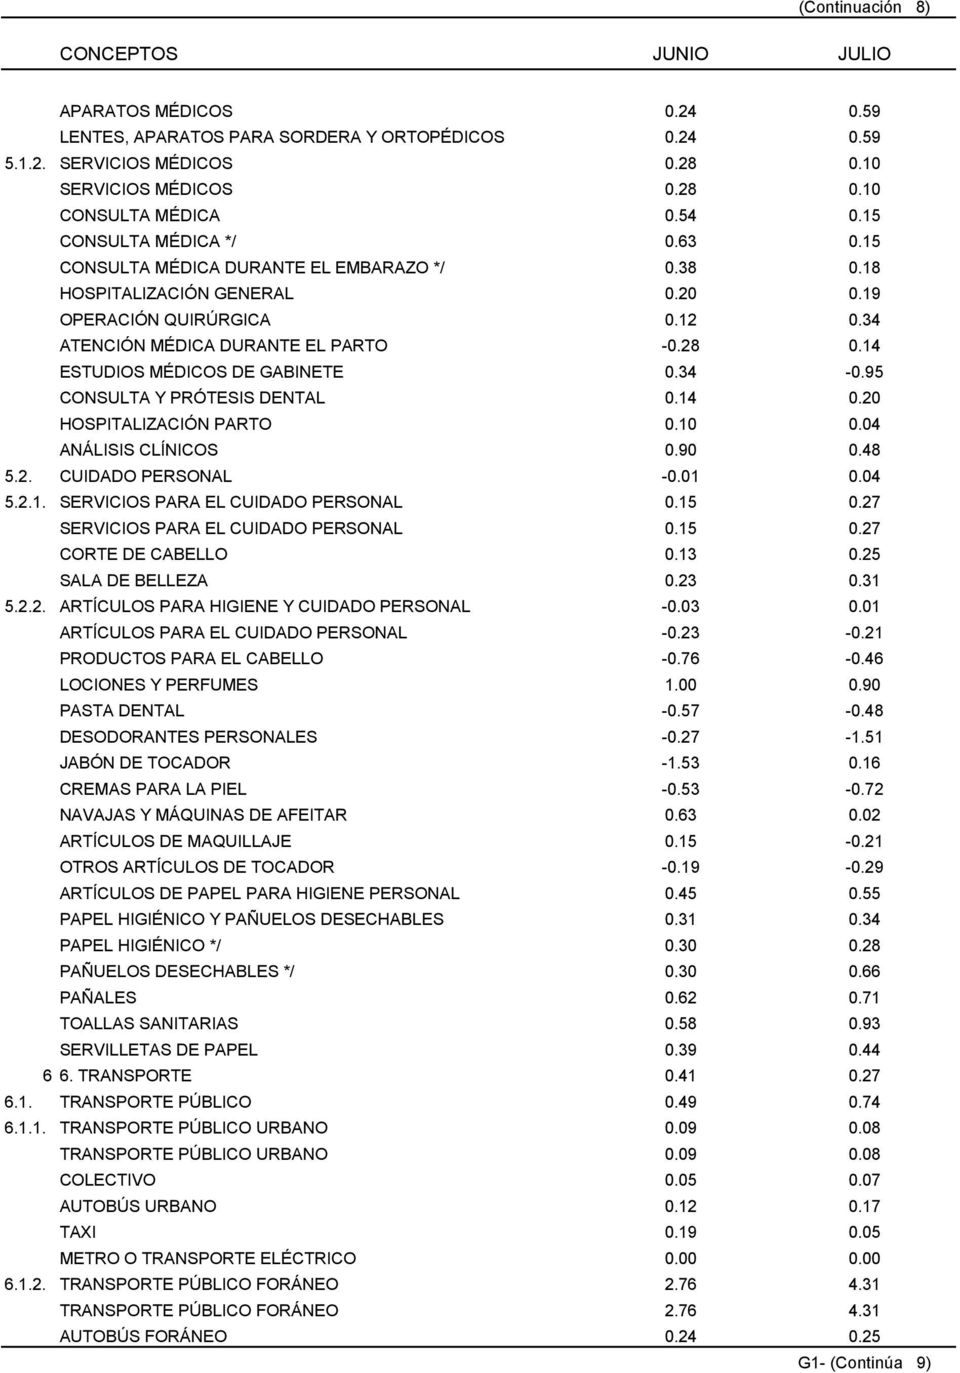 14 ESTUDIOS MÉDICOS DE GABINETE 0.34-0.95 CONSULTA Y PRÓTESIS DENTAL 0.14 0.20 HOSPITALIZACIÓN PARTO 0.10 0.04 ANÁLISIS CLÍNICOS 0.90 0.48 5.2. CUIDADO PERSONAL -0.01 0.04 5.2.1. SERVICIOS PARA EL CUIDADO PERSONAL 0.